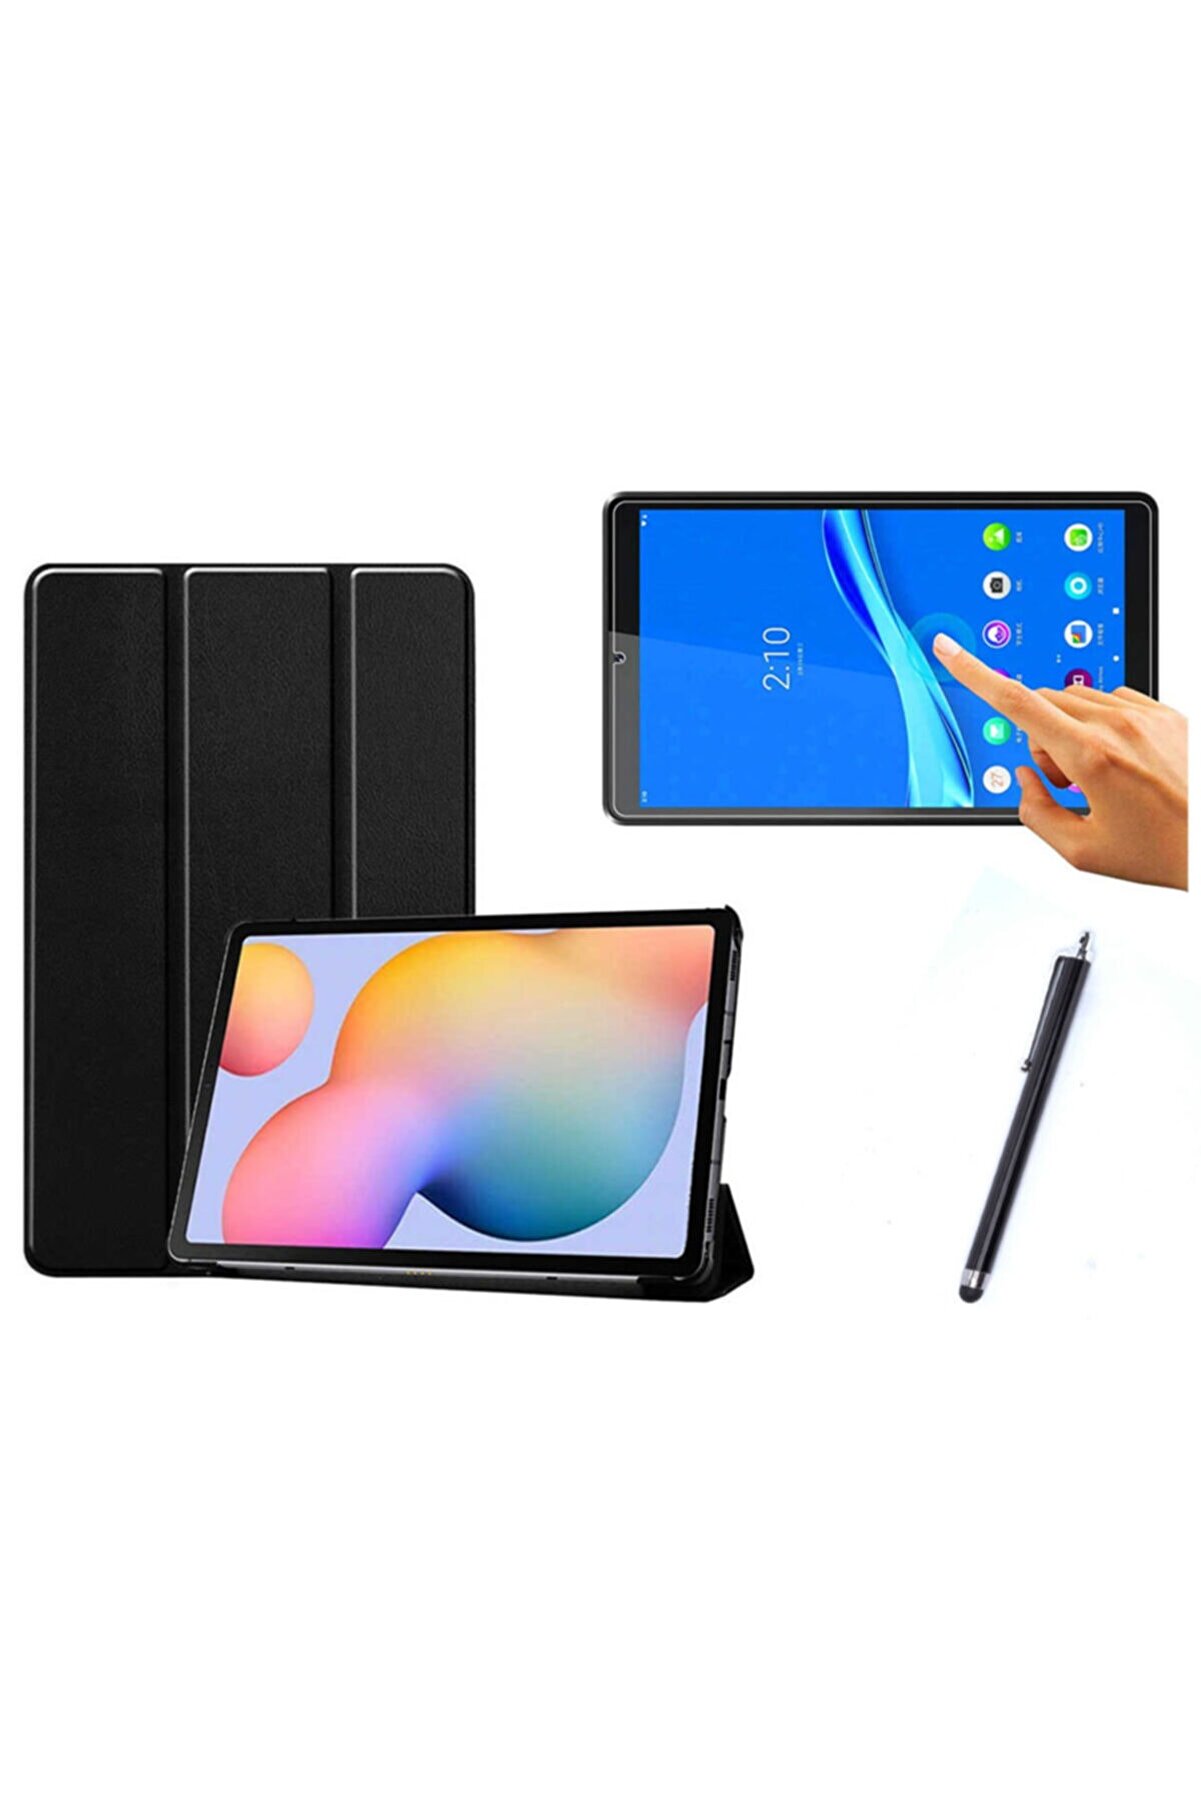 Nezih Case M10 Fhd Plus (2. Nesil) Tb-x606f 10.3 Uyumlu Smart Cover Tablet Kılıfı + Ekran Koruyucu + Kalem